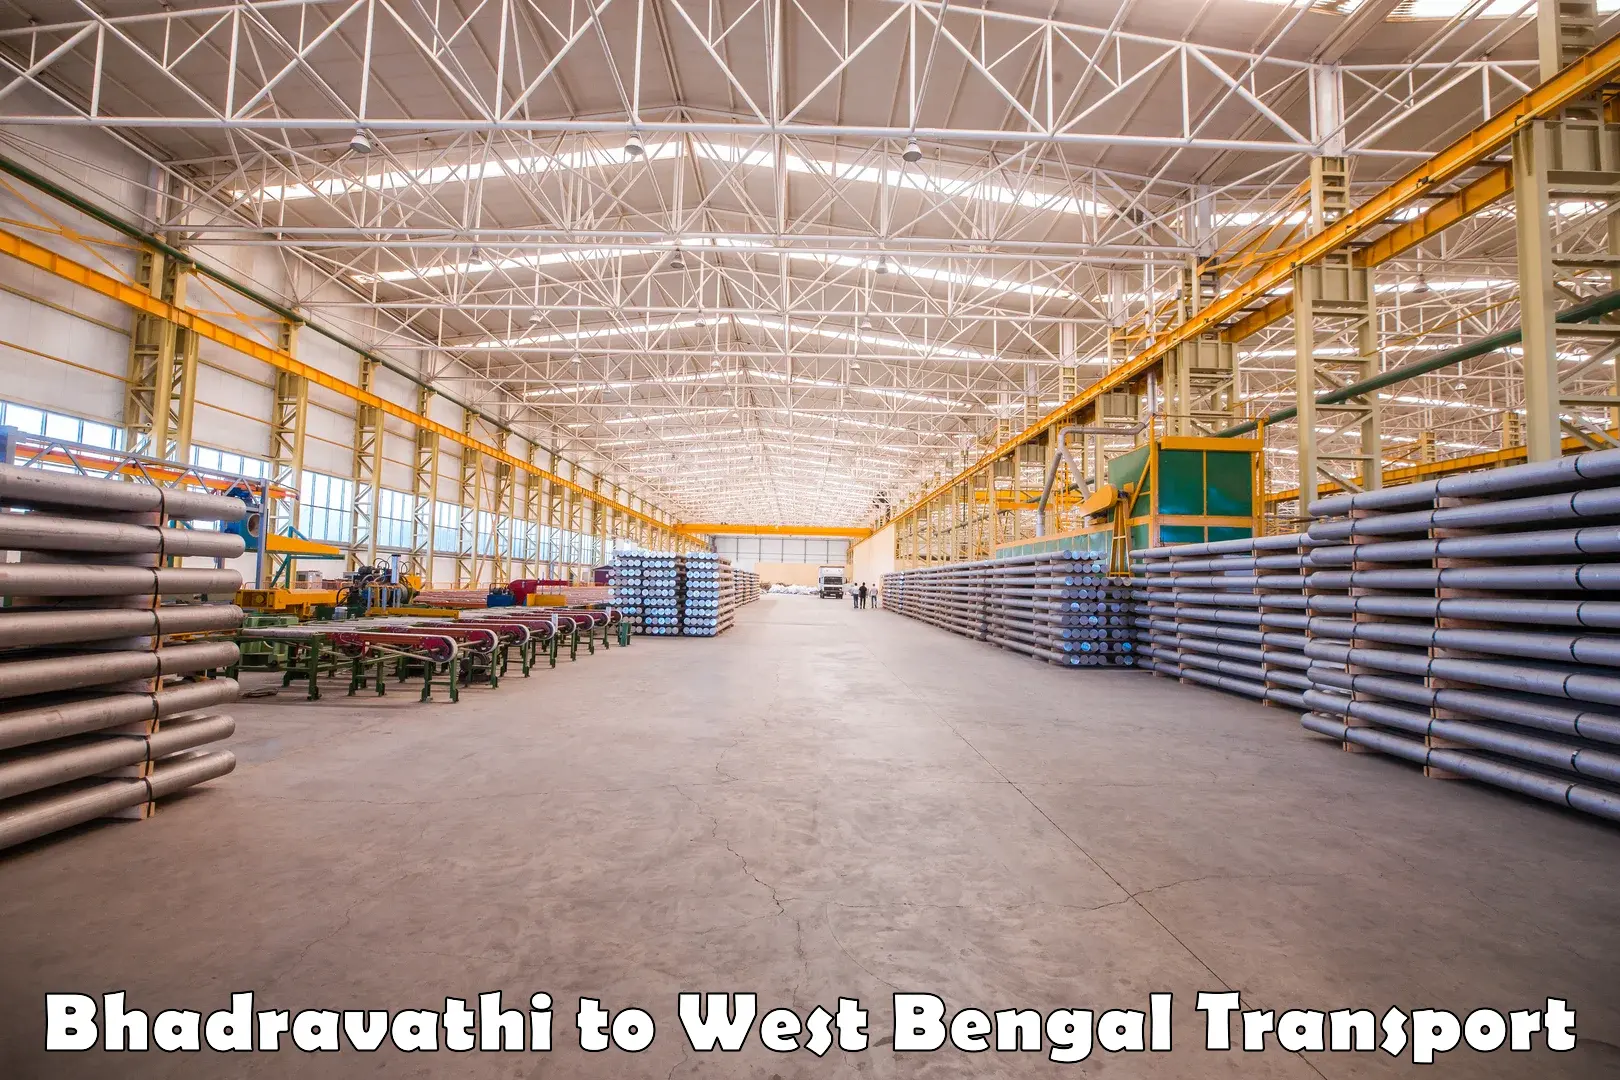 Intercity transport Bhadravathi to West Bengal